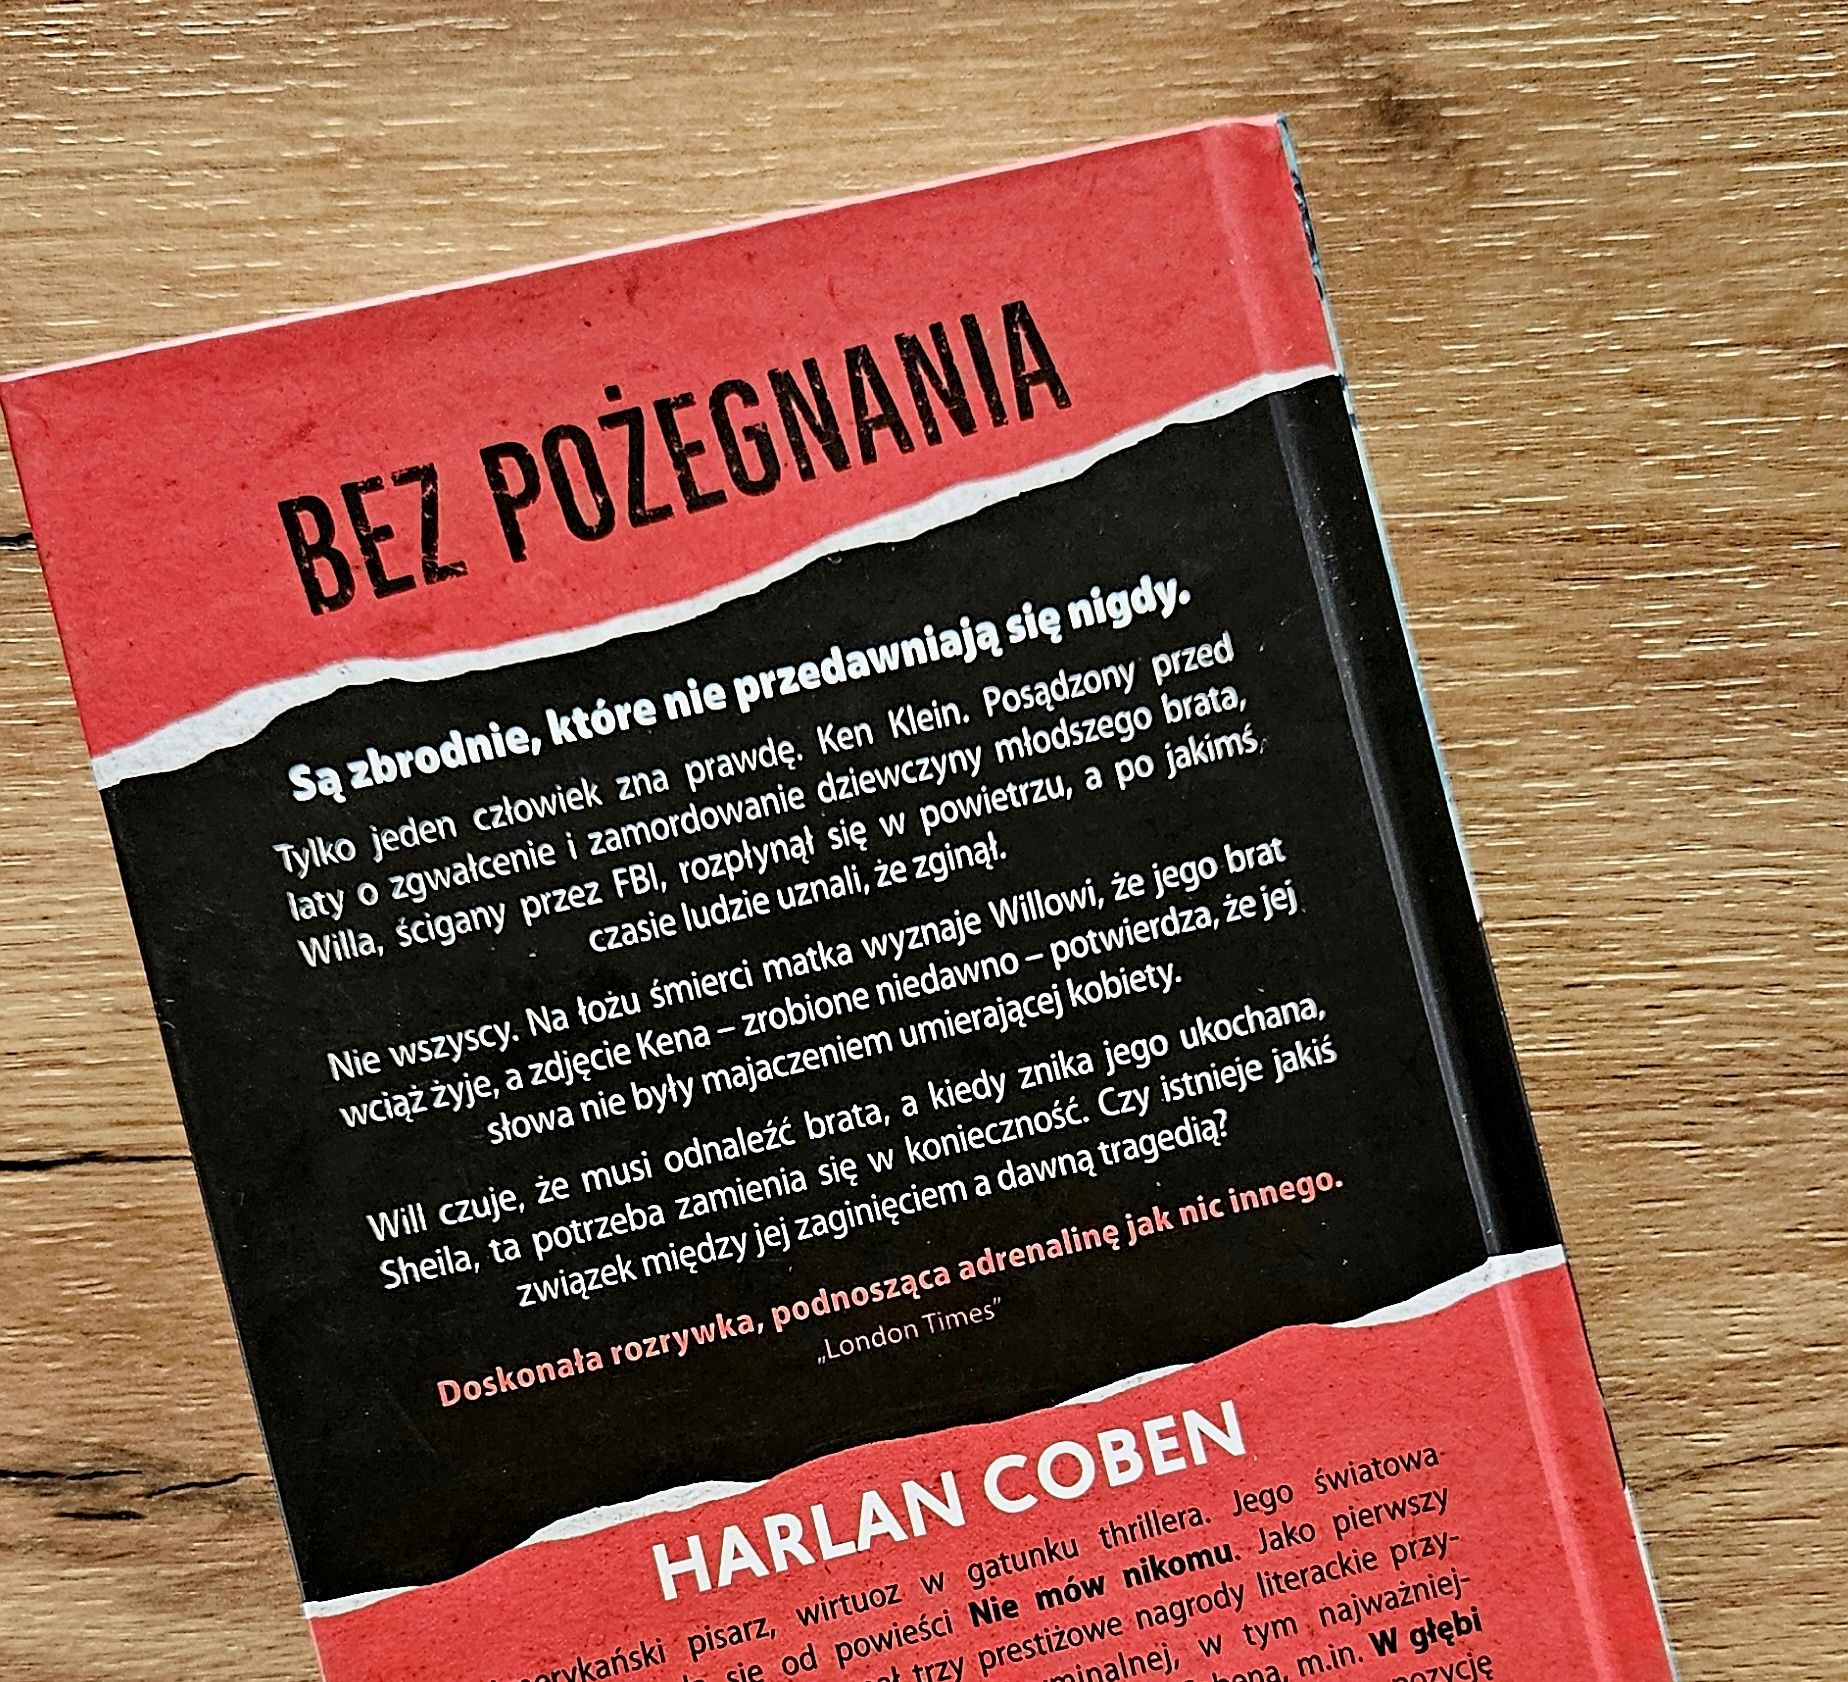 Harlan Coben "Bez Pożegnania".